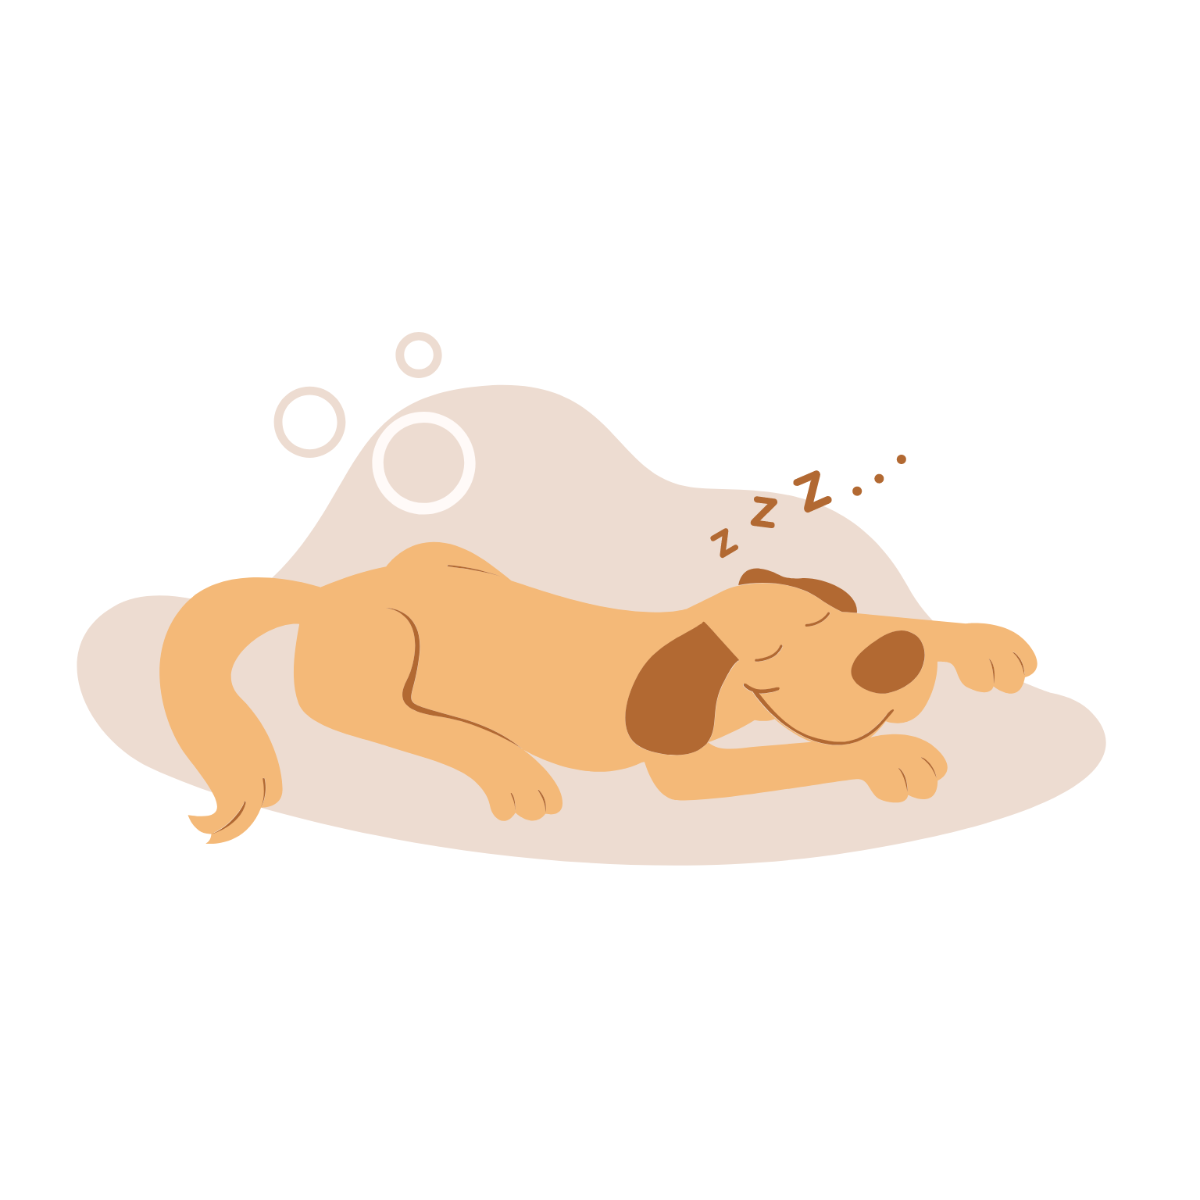 Free Cartoon Sleeping Dog Vector Template